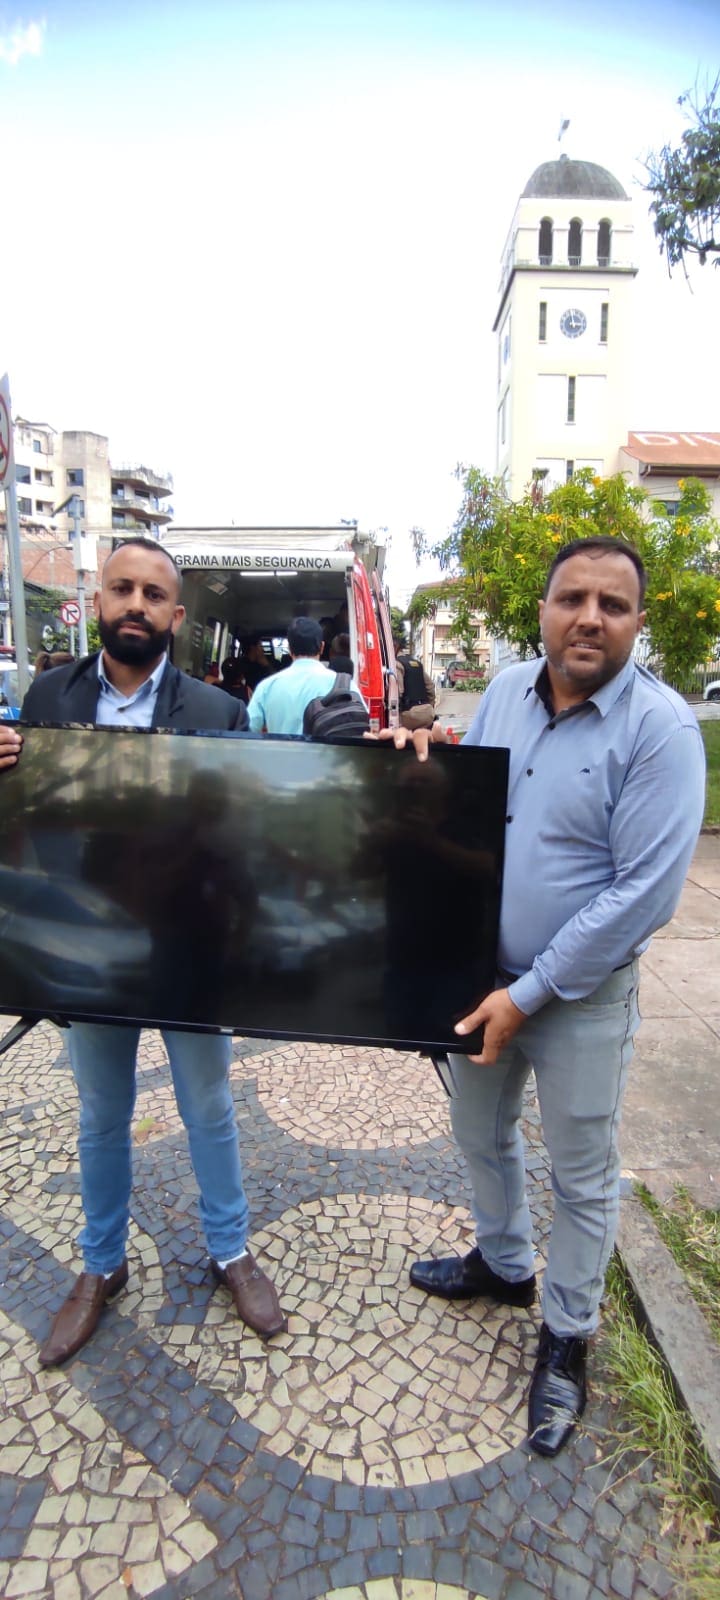 Vereadores encontram Tv roubada durante fiscalização no bairro Rancho Alegre